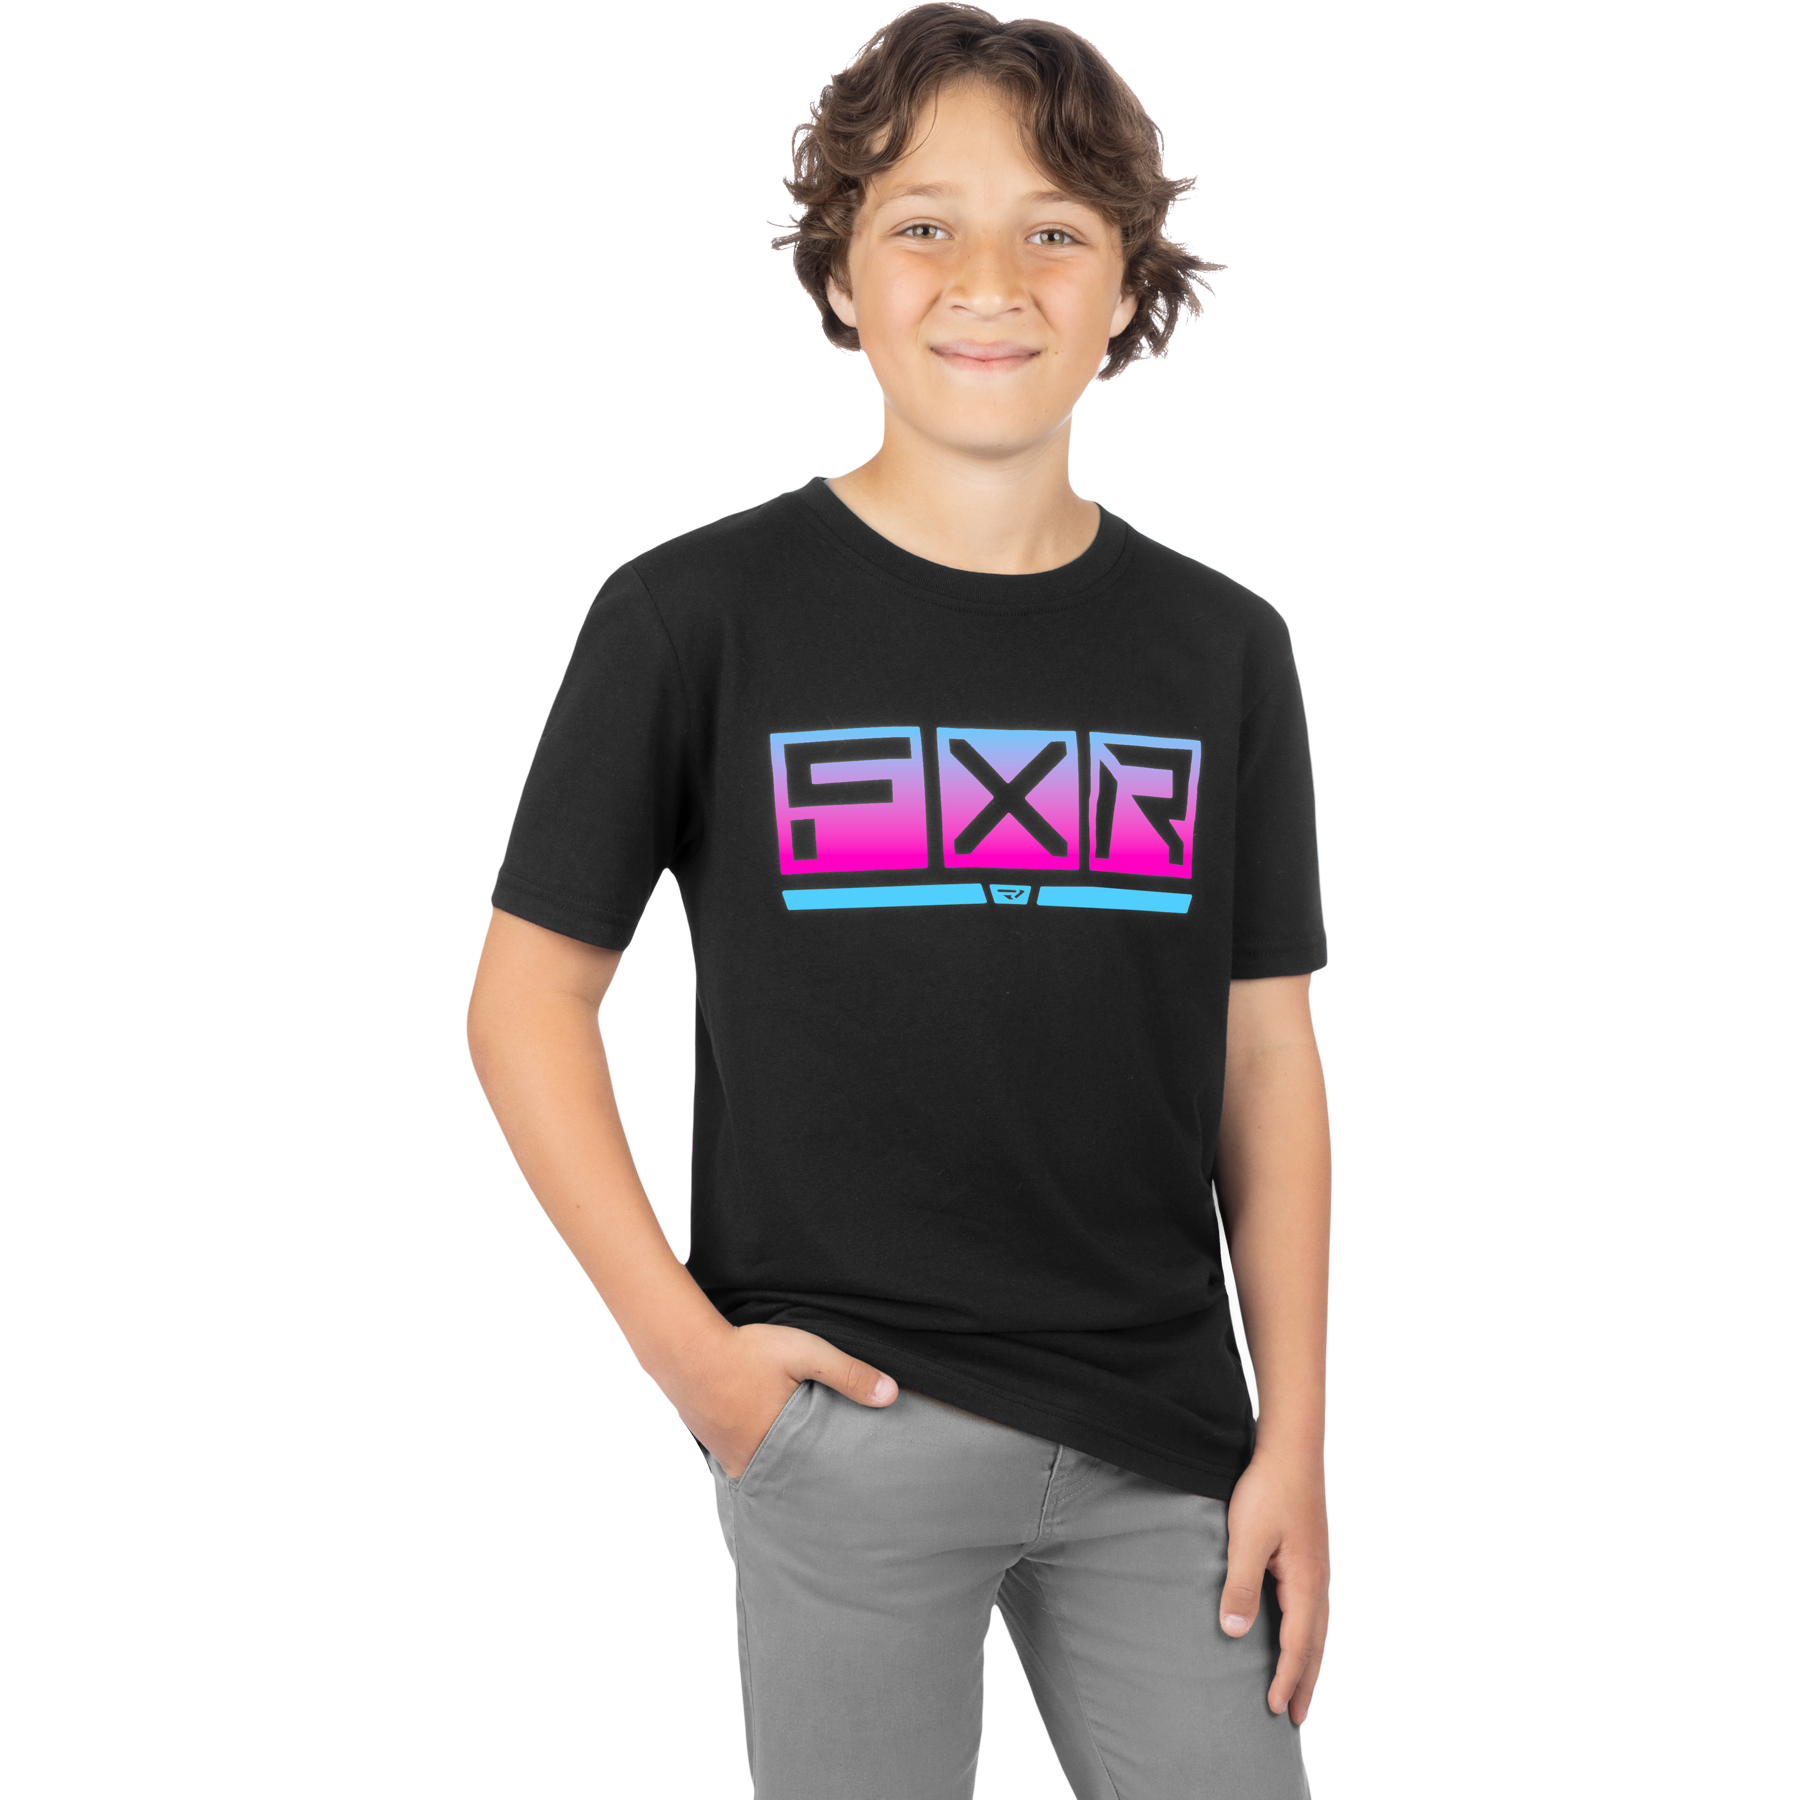 mode enfants chandails t-shirts par fxr racing pour podium premium